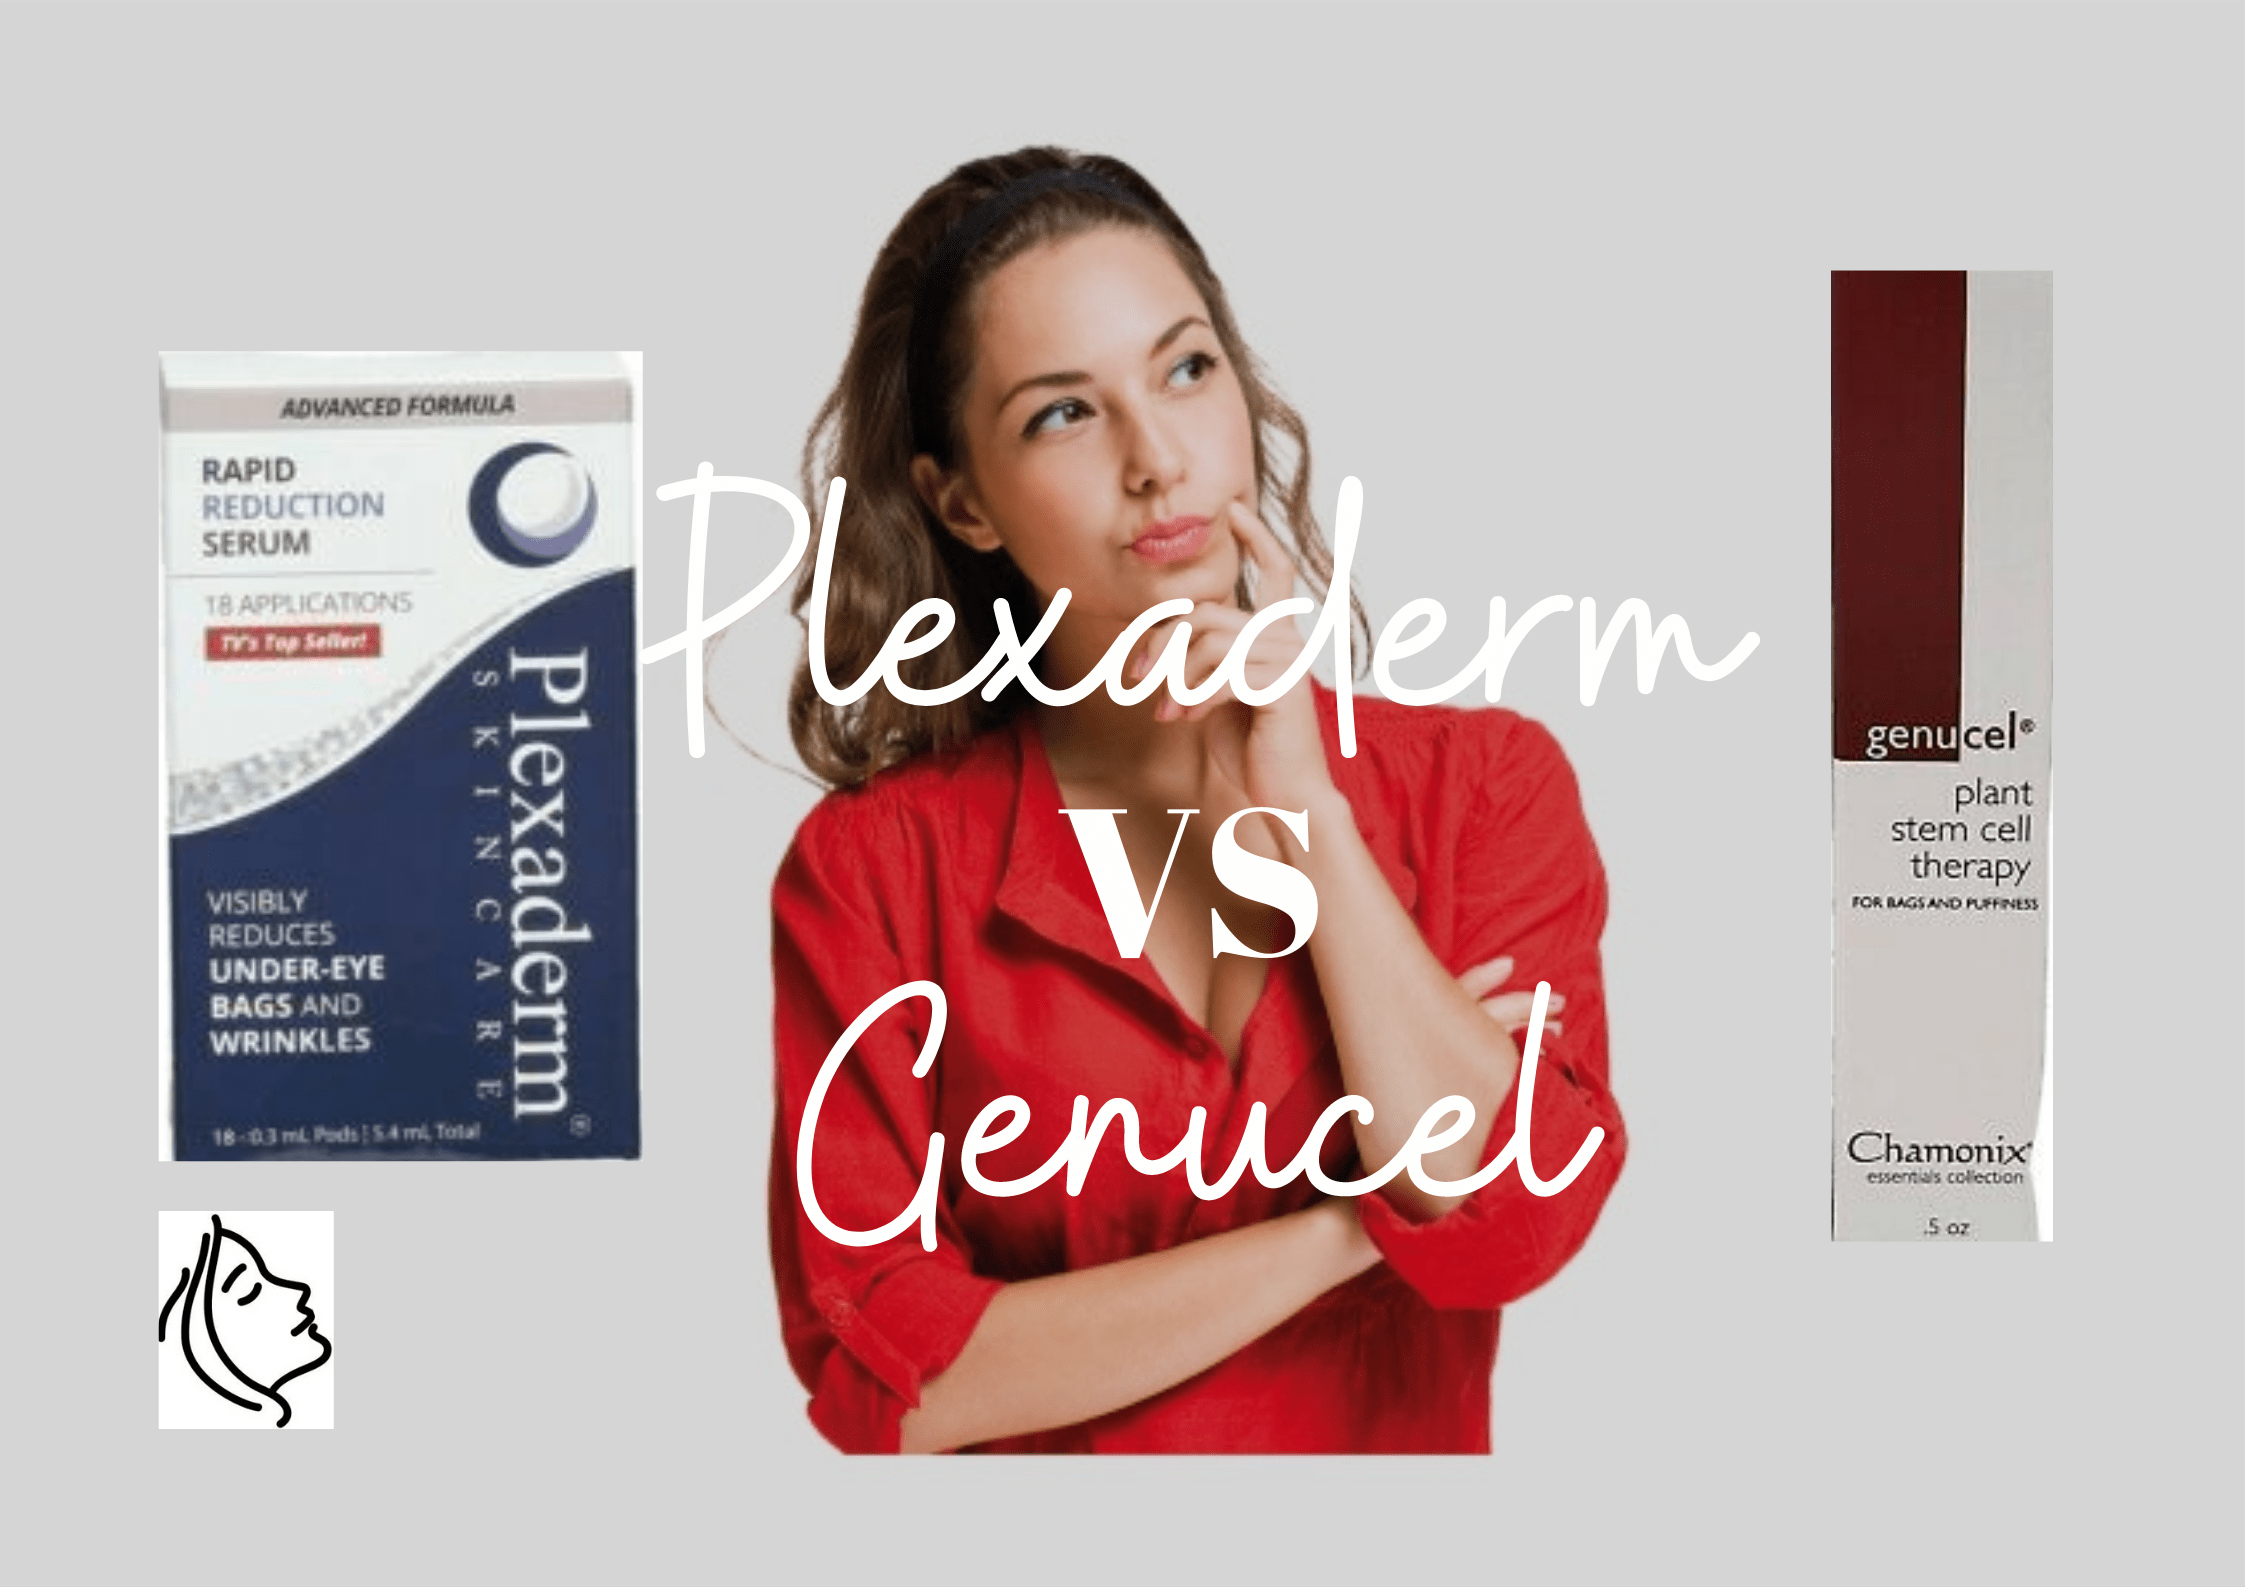 Plexaderm-vs-Genucel